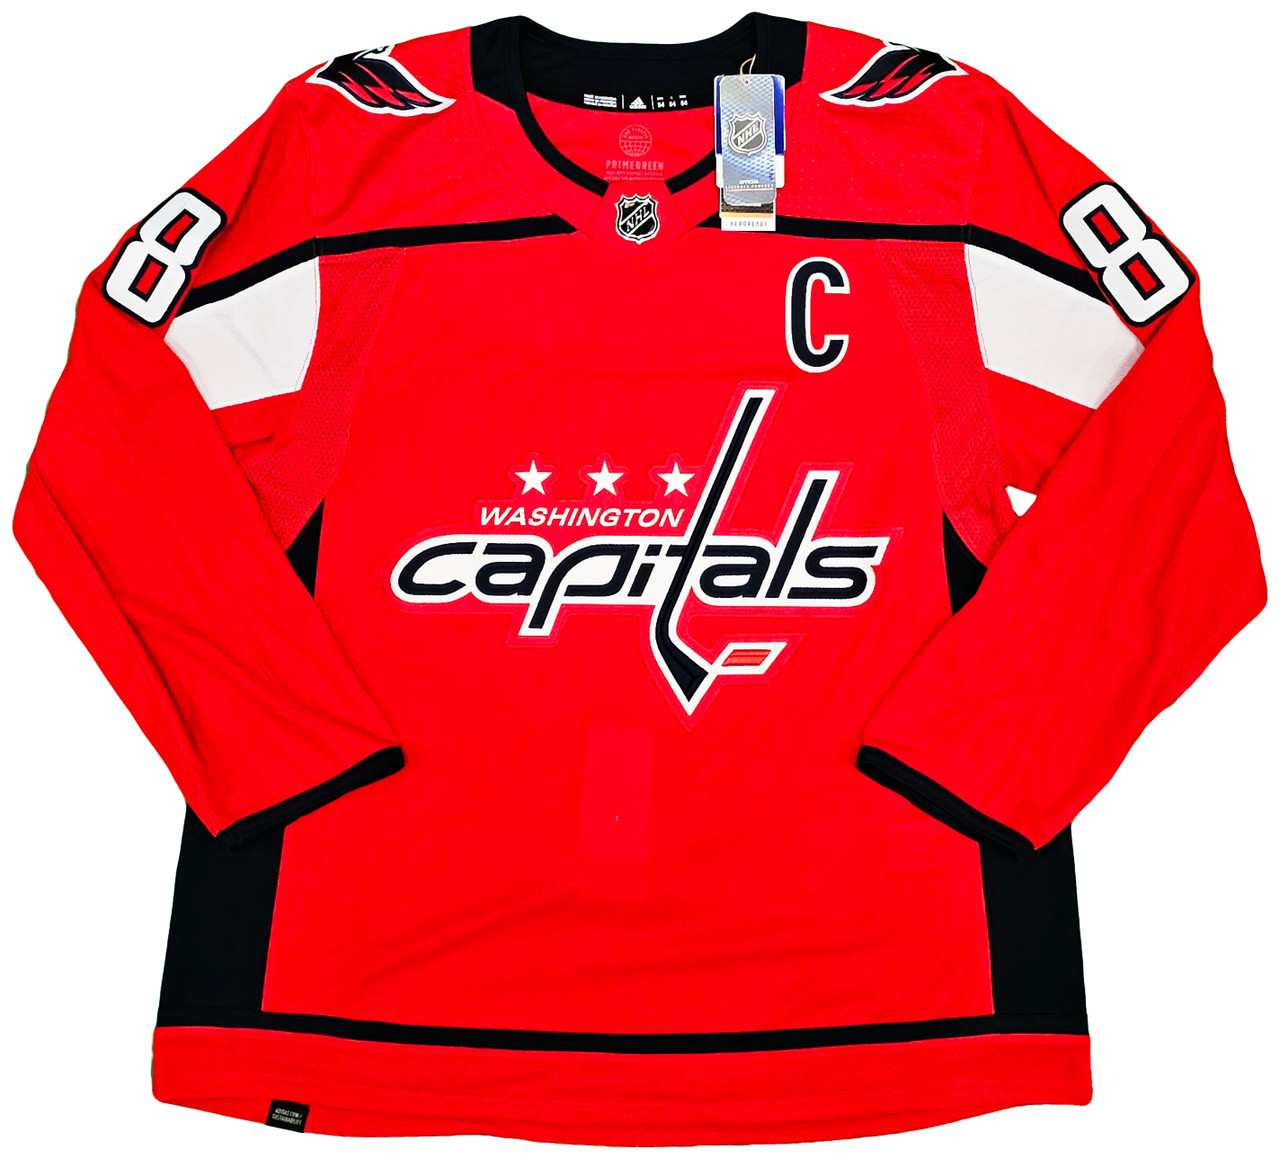 Washington Capitals Adidas Authentic Home NHL Hockey Jersey - S